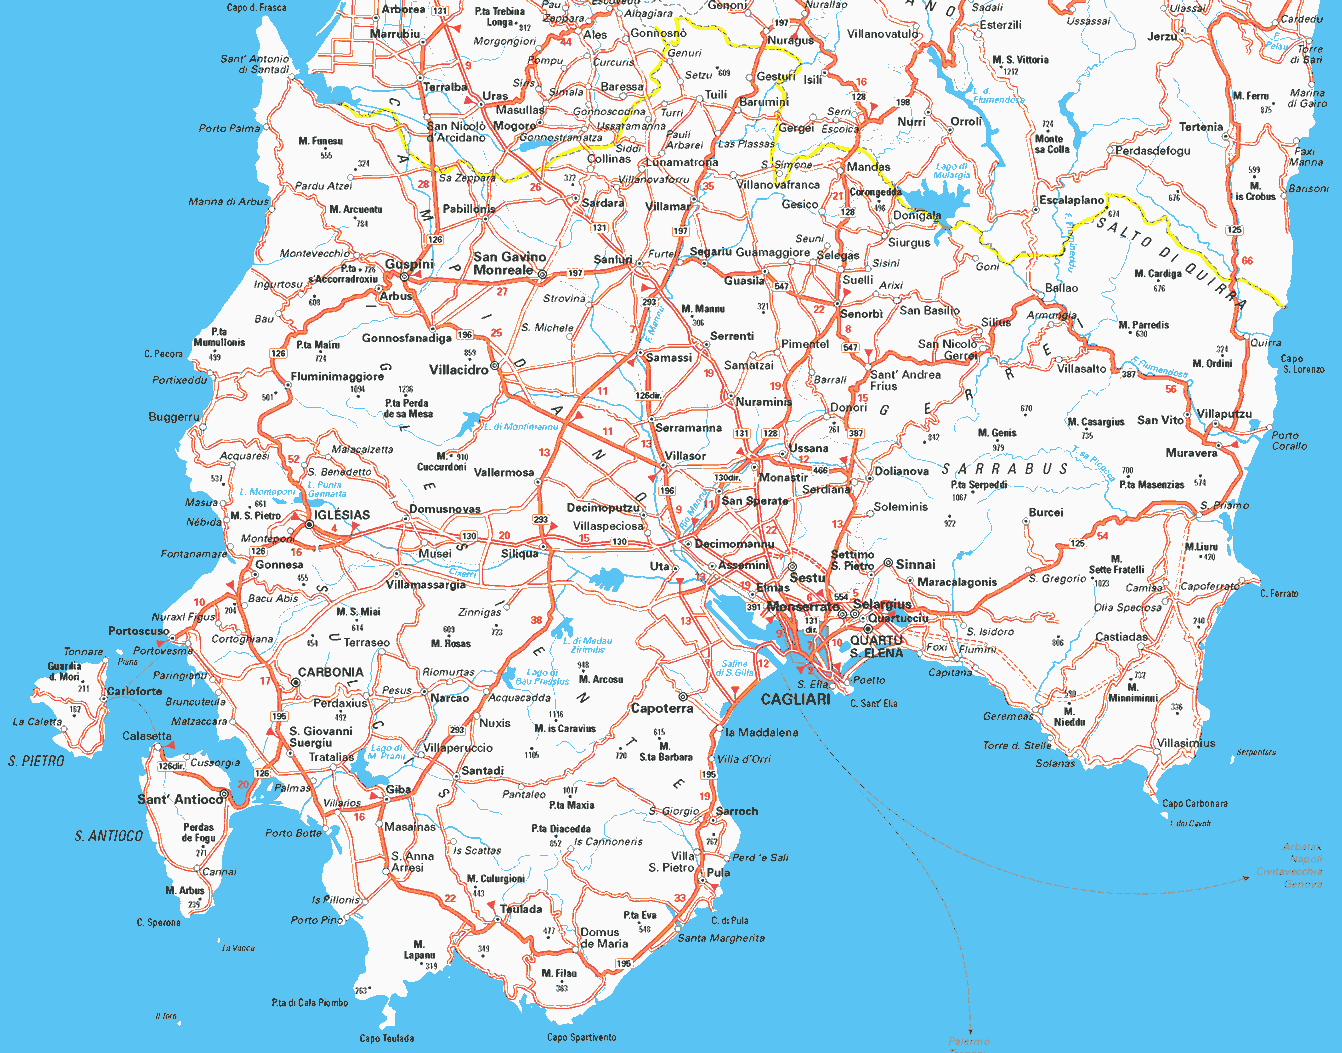 cagliari province map